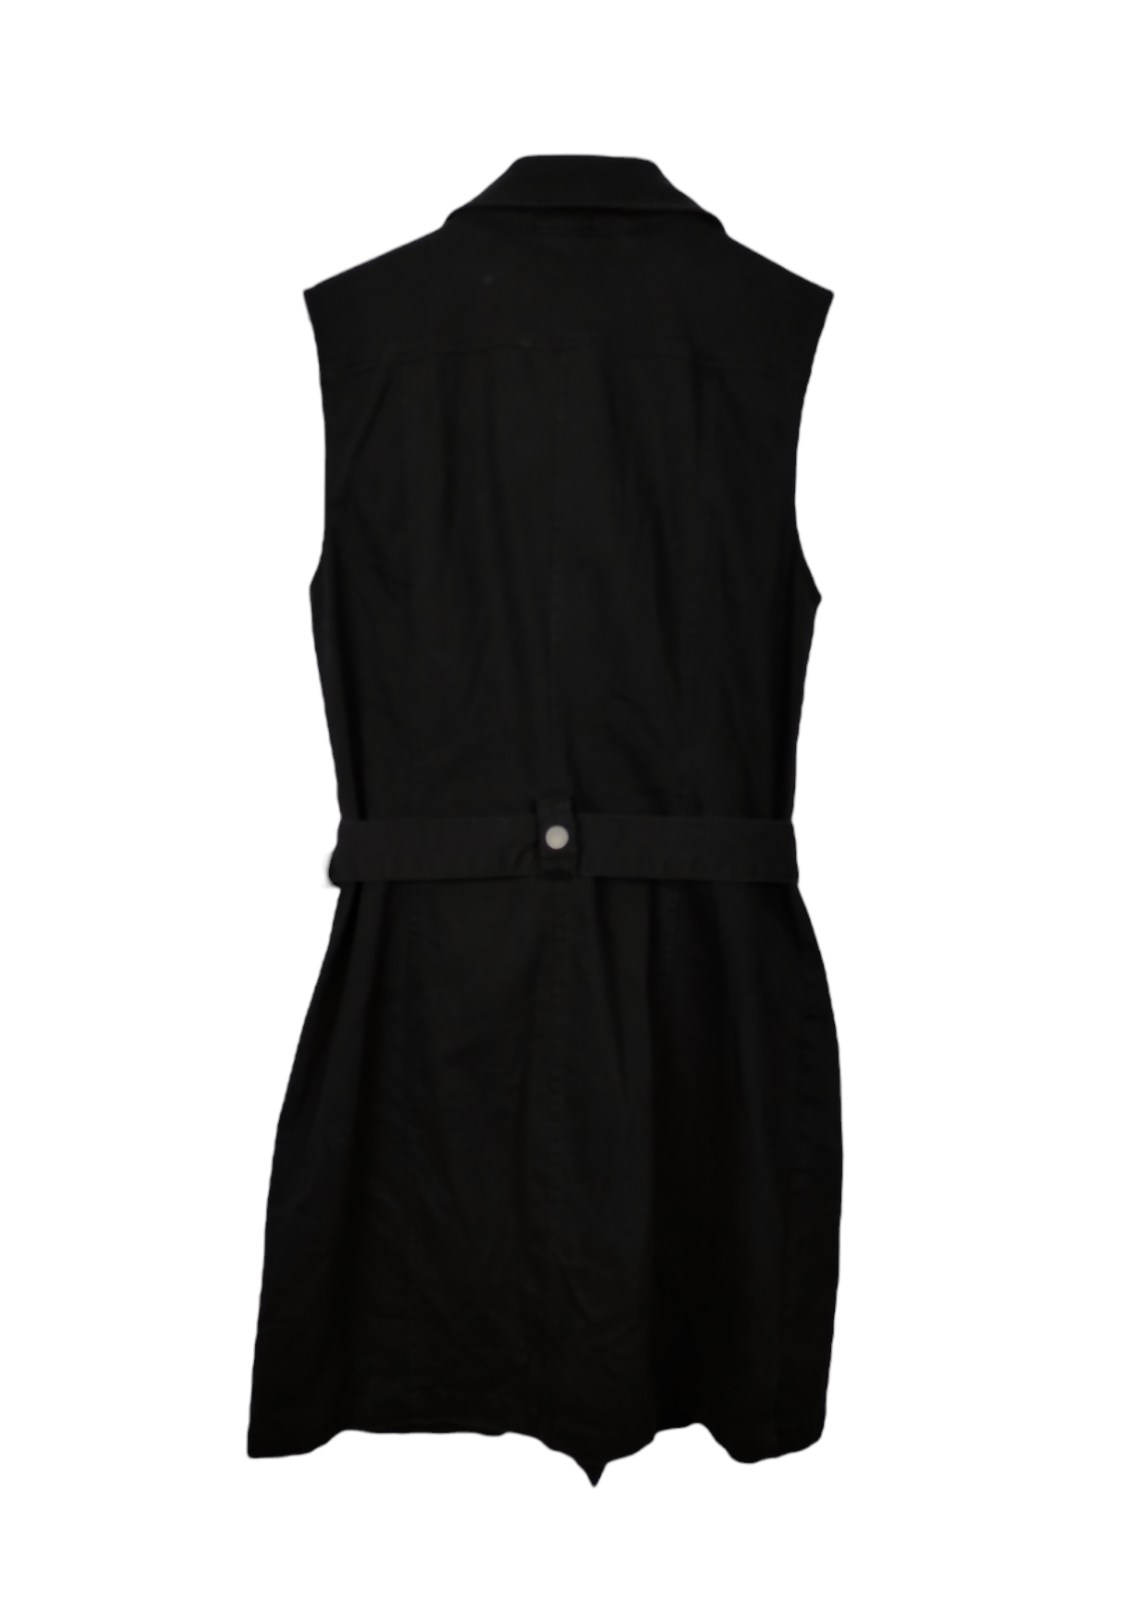 Τζιν, Αμάνικο Φόρεμα σε Μαύρο Denim (Medium)